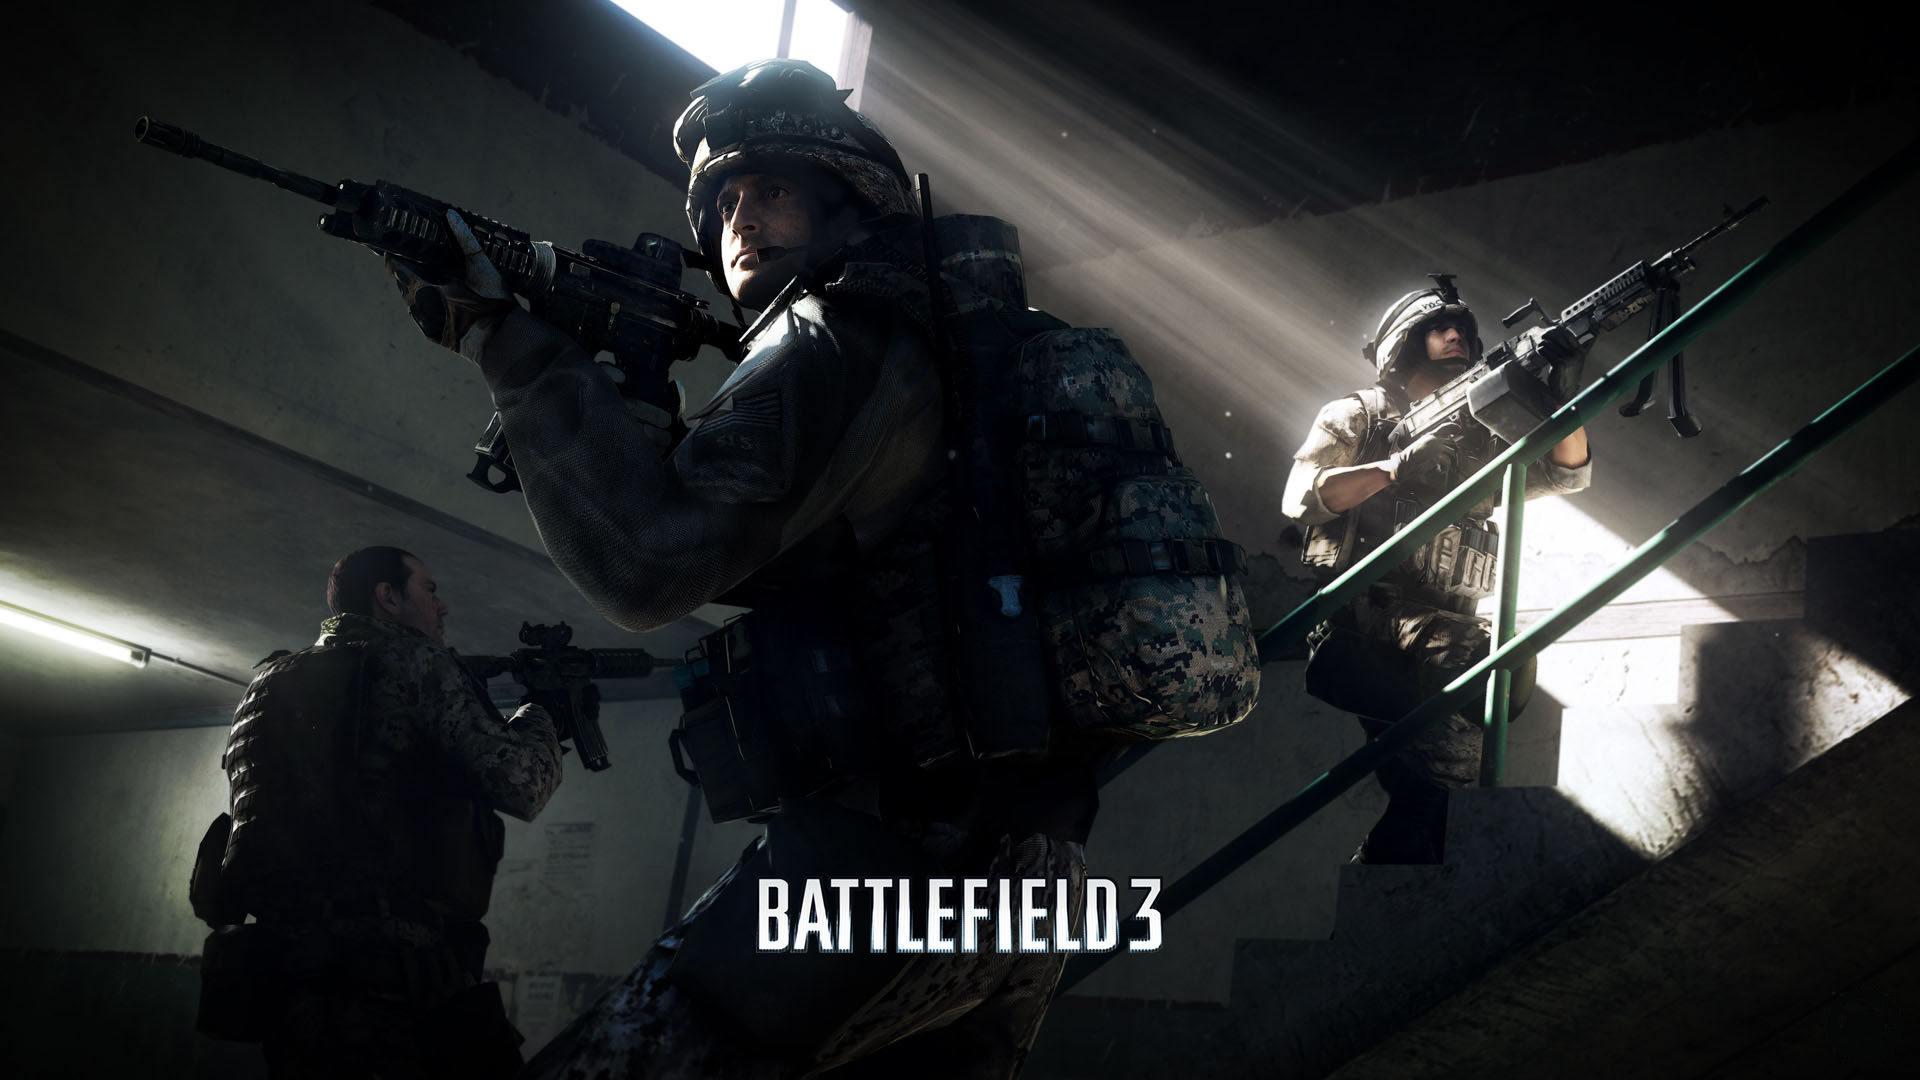 Fondos de Pantalla Battlefield Battlefield 3 Juegos descargar imagenes